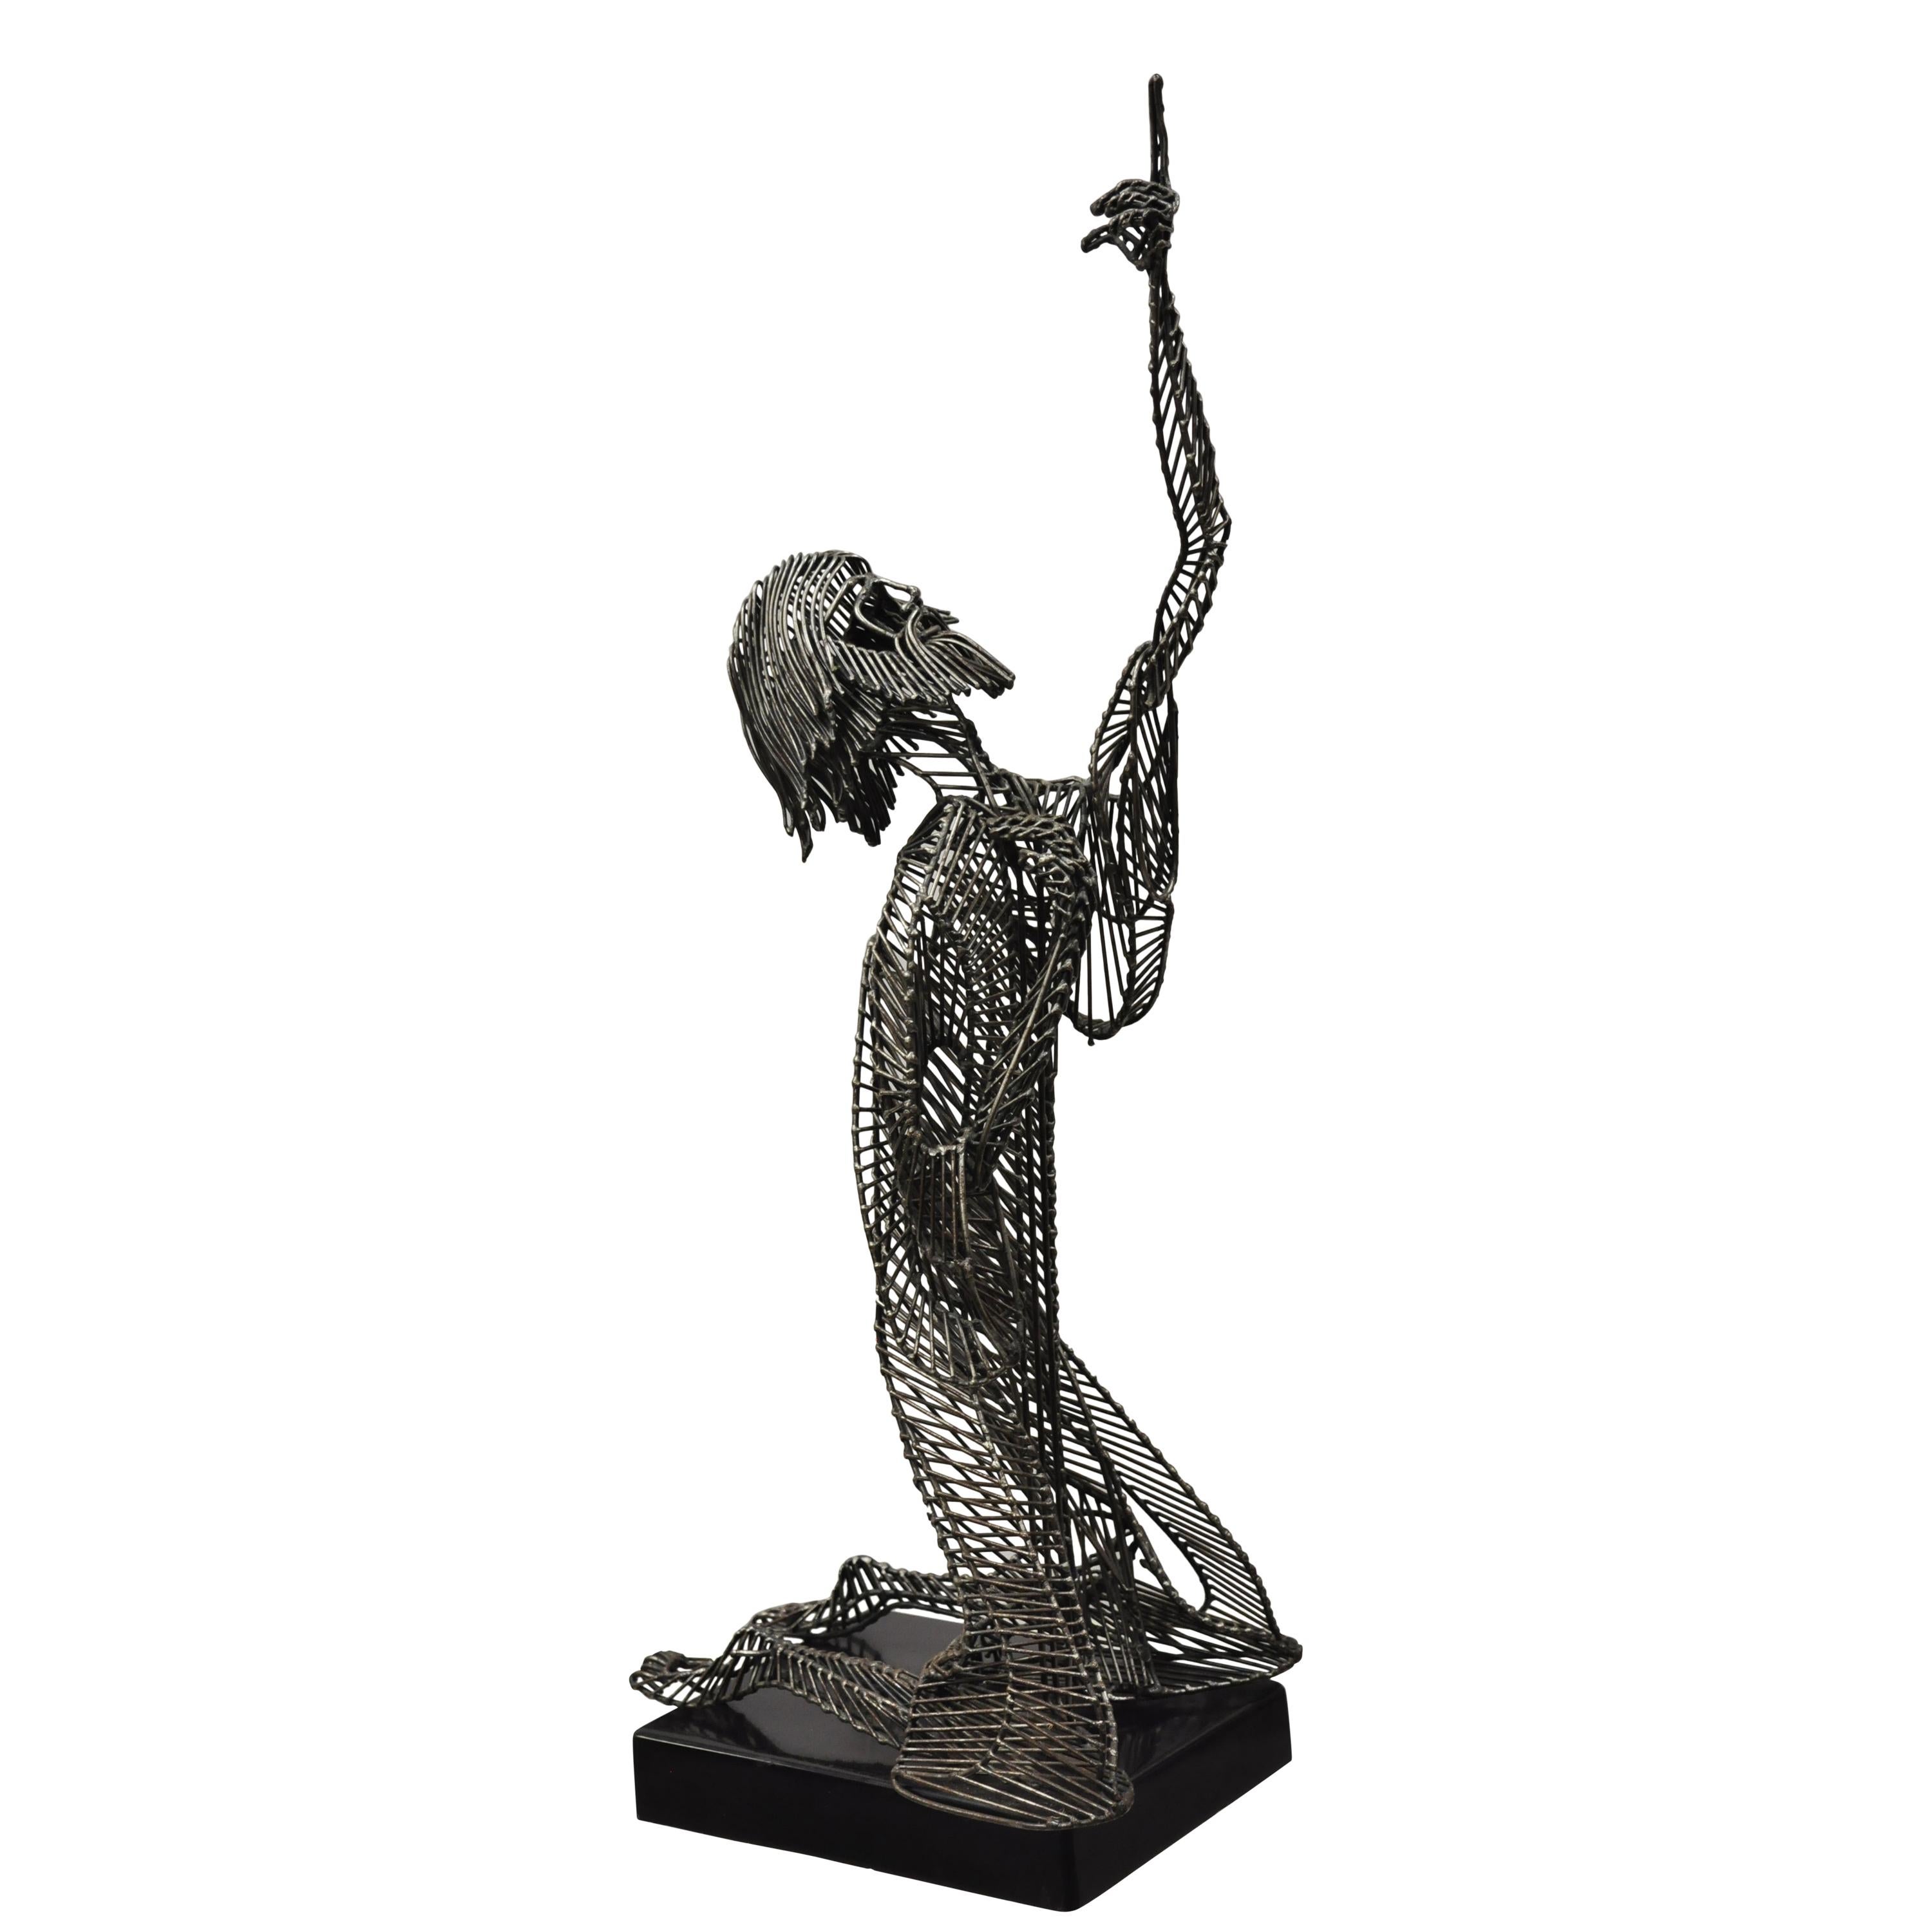 Tom & Bob Bennett - Sculpture en métal métallique d'un homme de Jésus se penchant sur les genoux